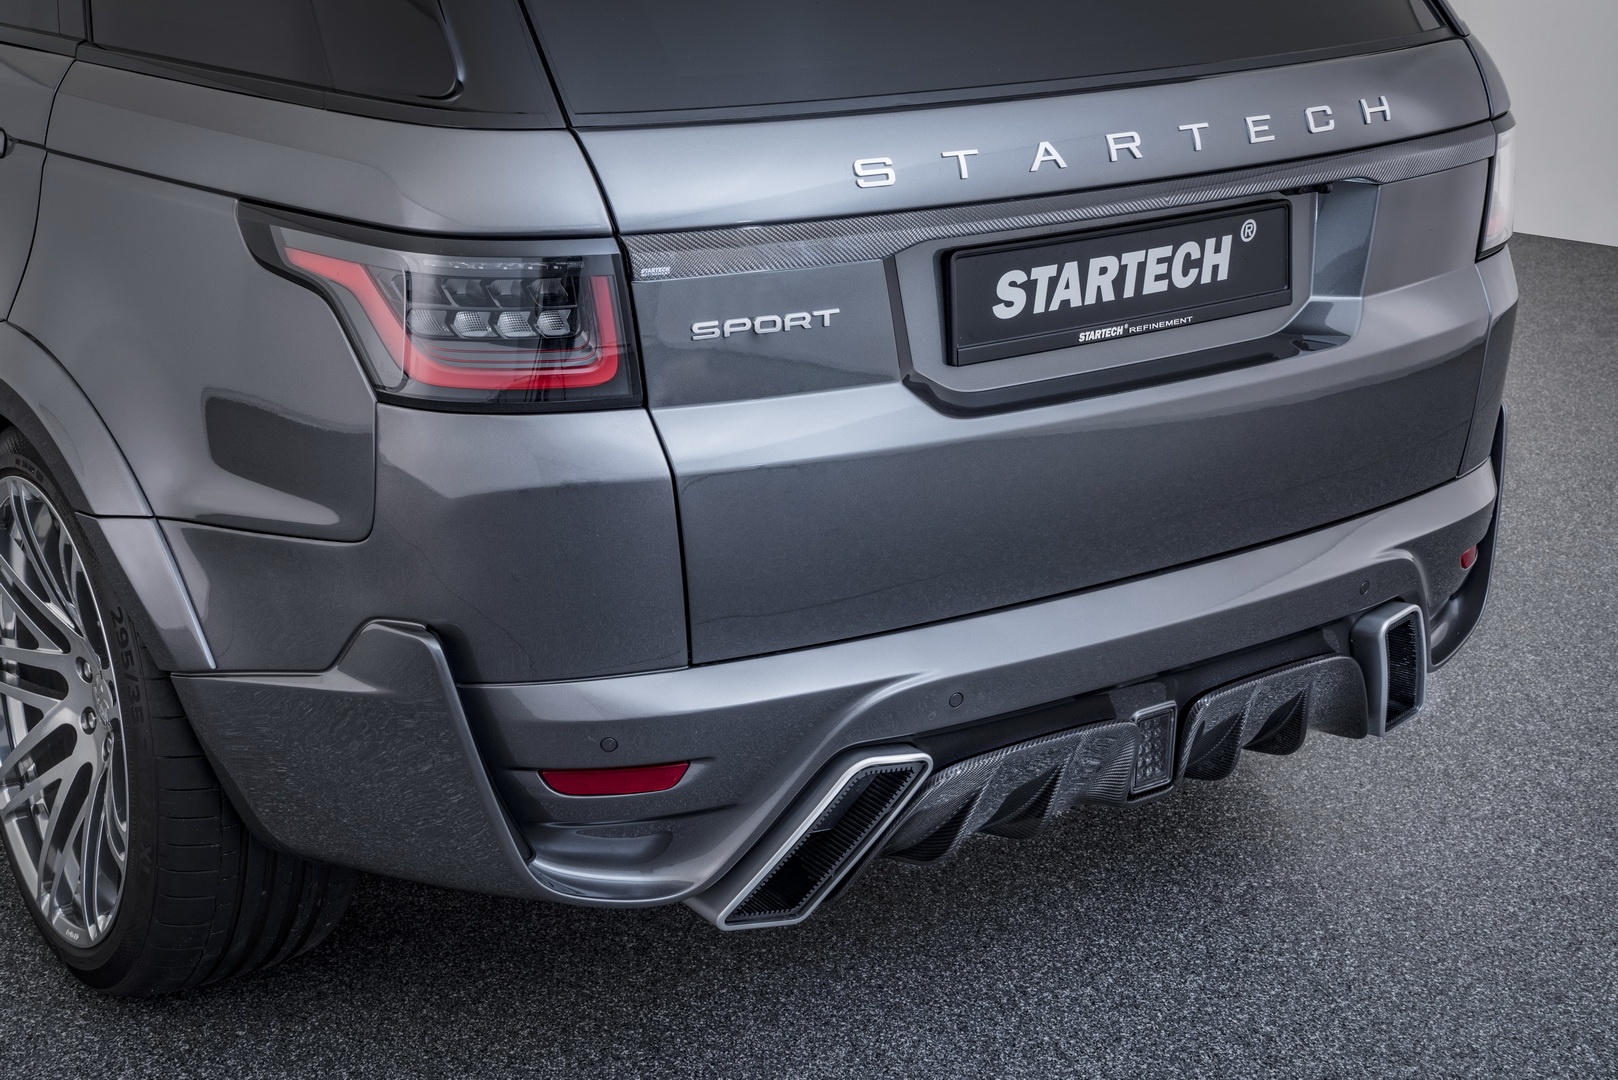 2019 STARTECH Range Rover Sport Rear Bumper Wallpapers (9)